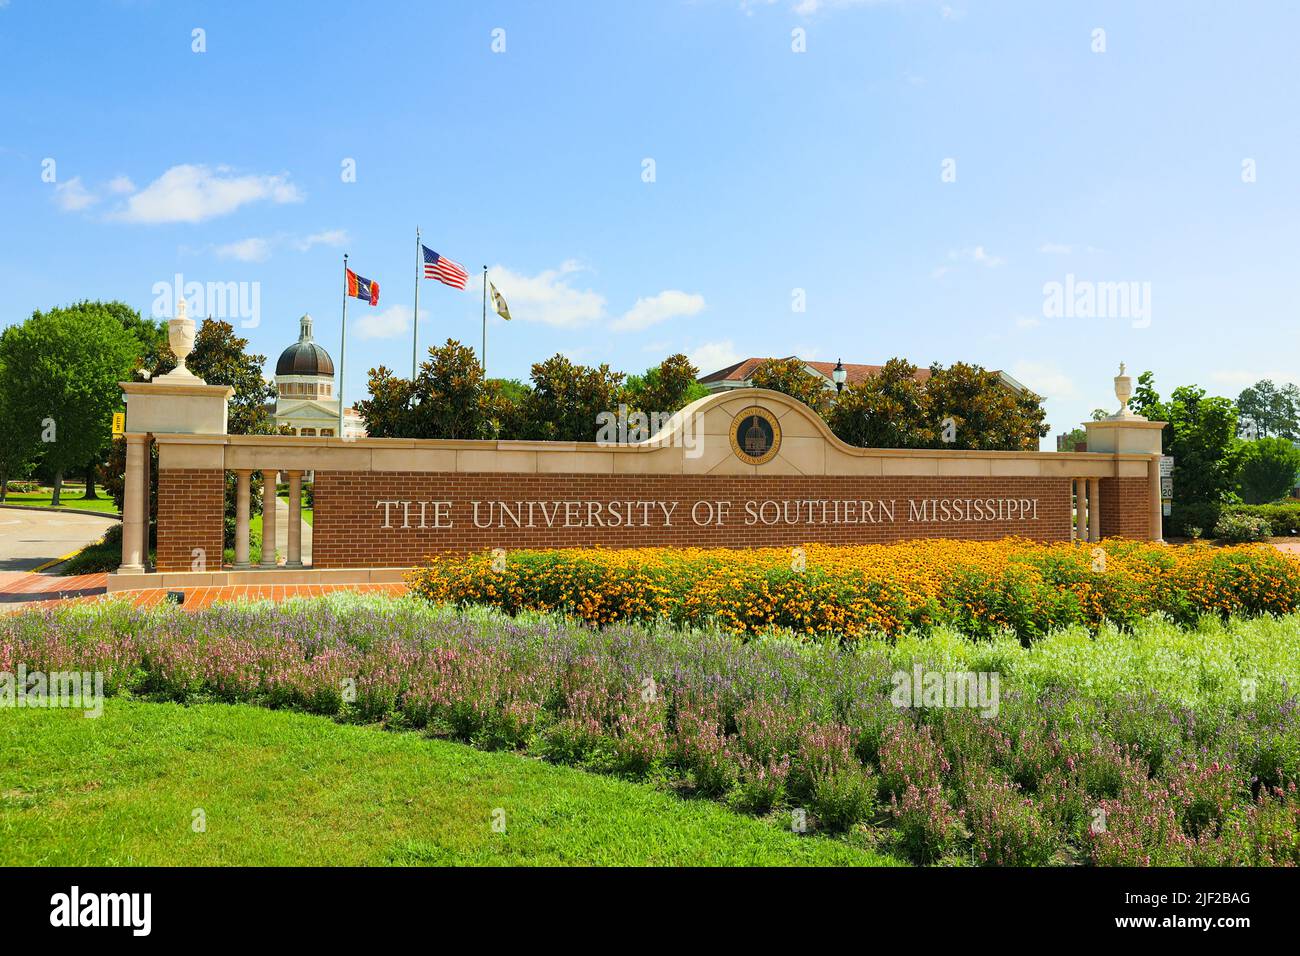 Hattiesburg, MS - 12 juin 2022 : panneau d'entrée de l'université du Mississippi du Sud Banque D'Images